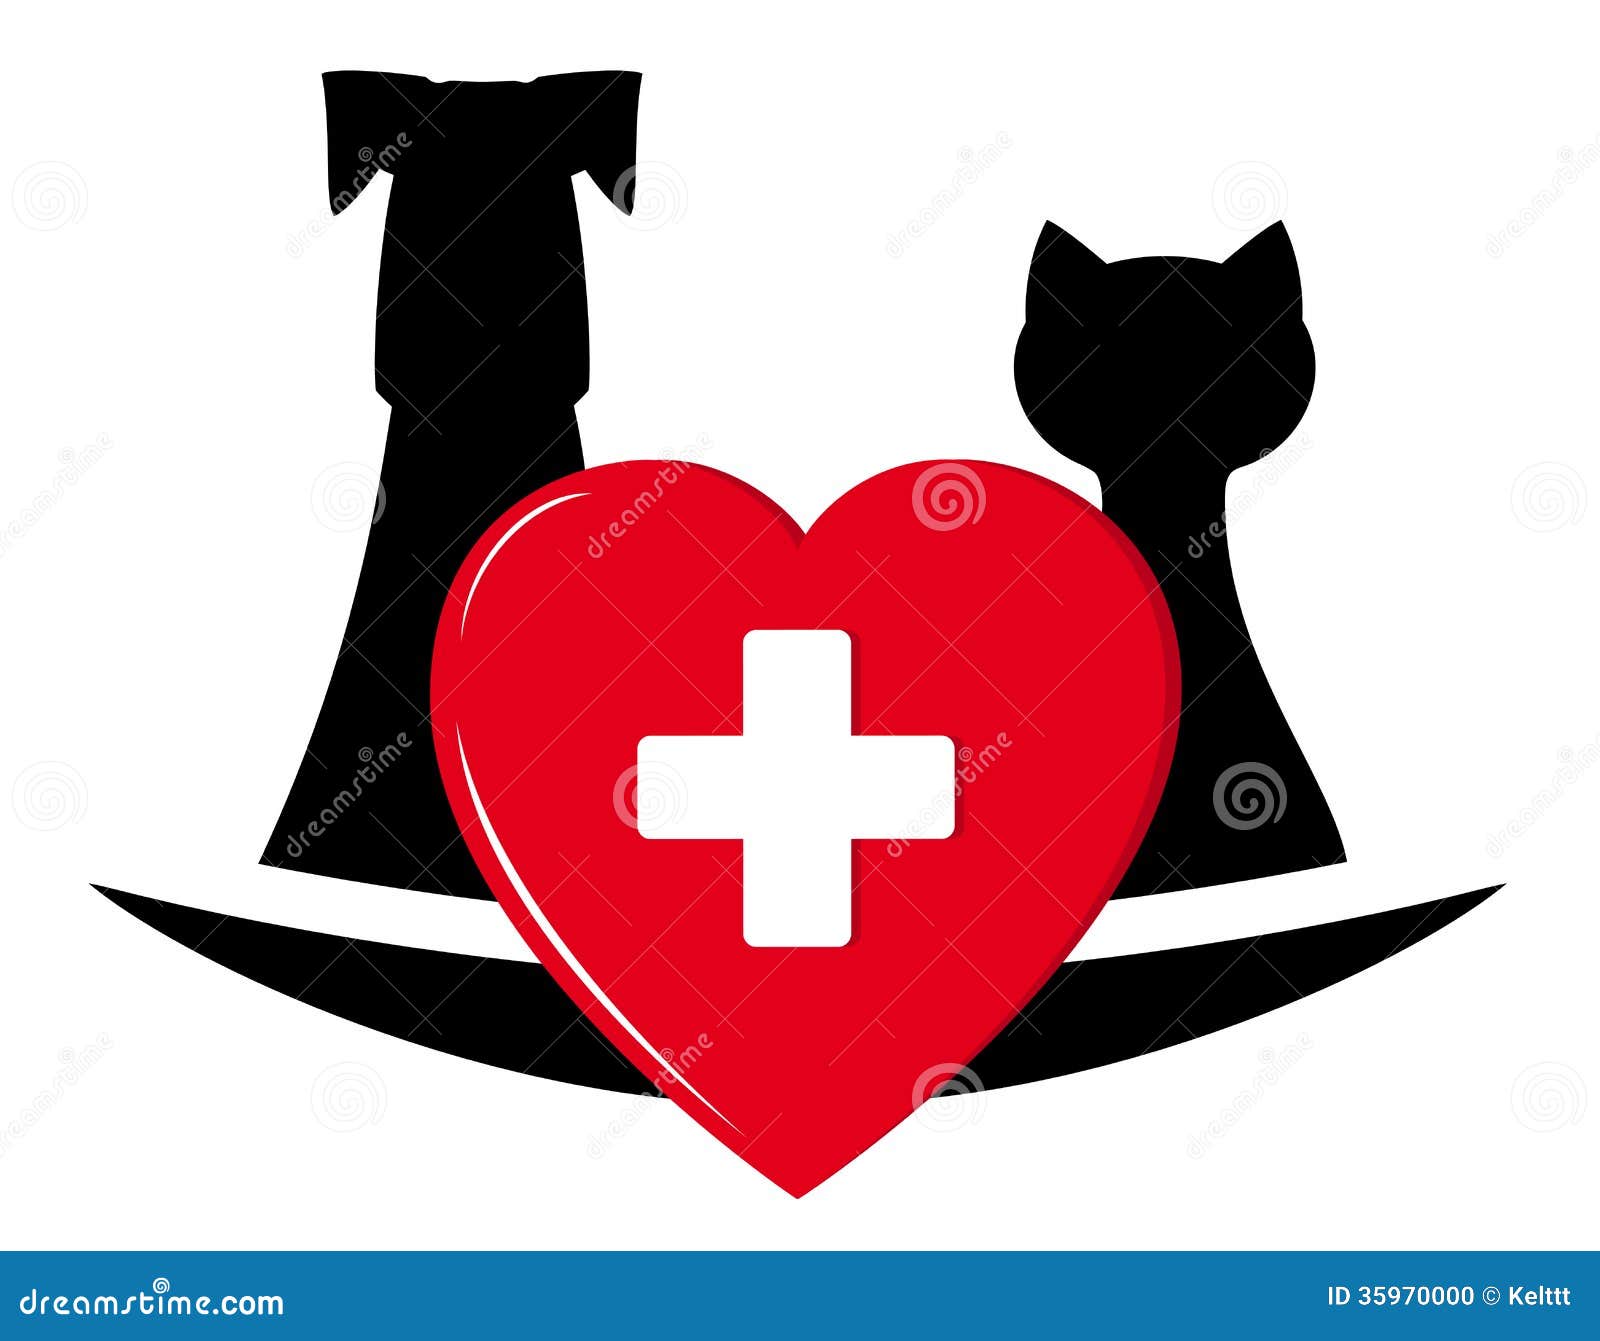 free veterinary logo clipart - photo #42